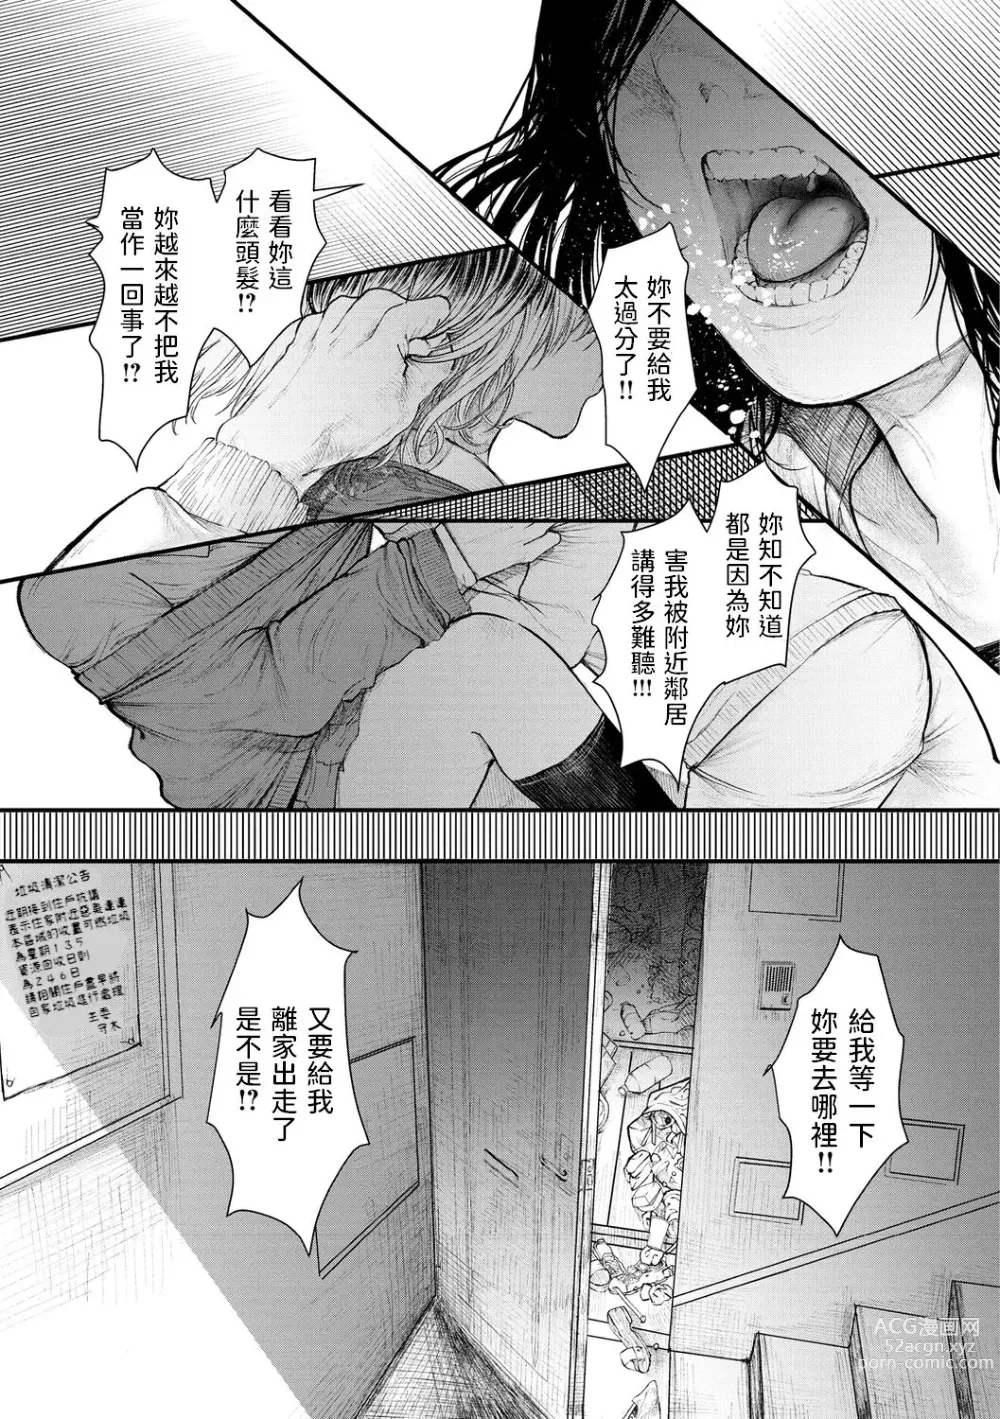 Page 1 of manga Pureless